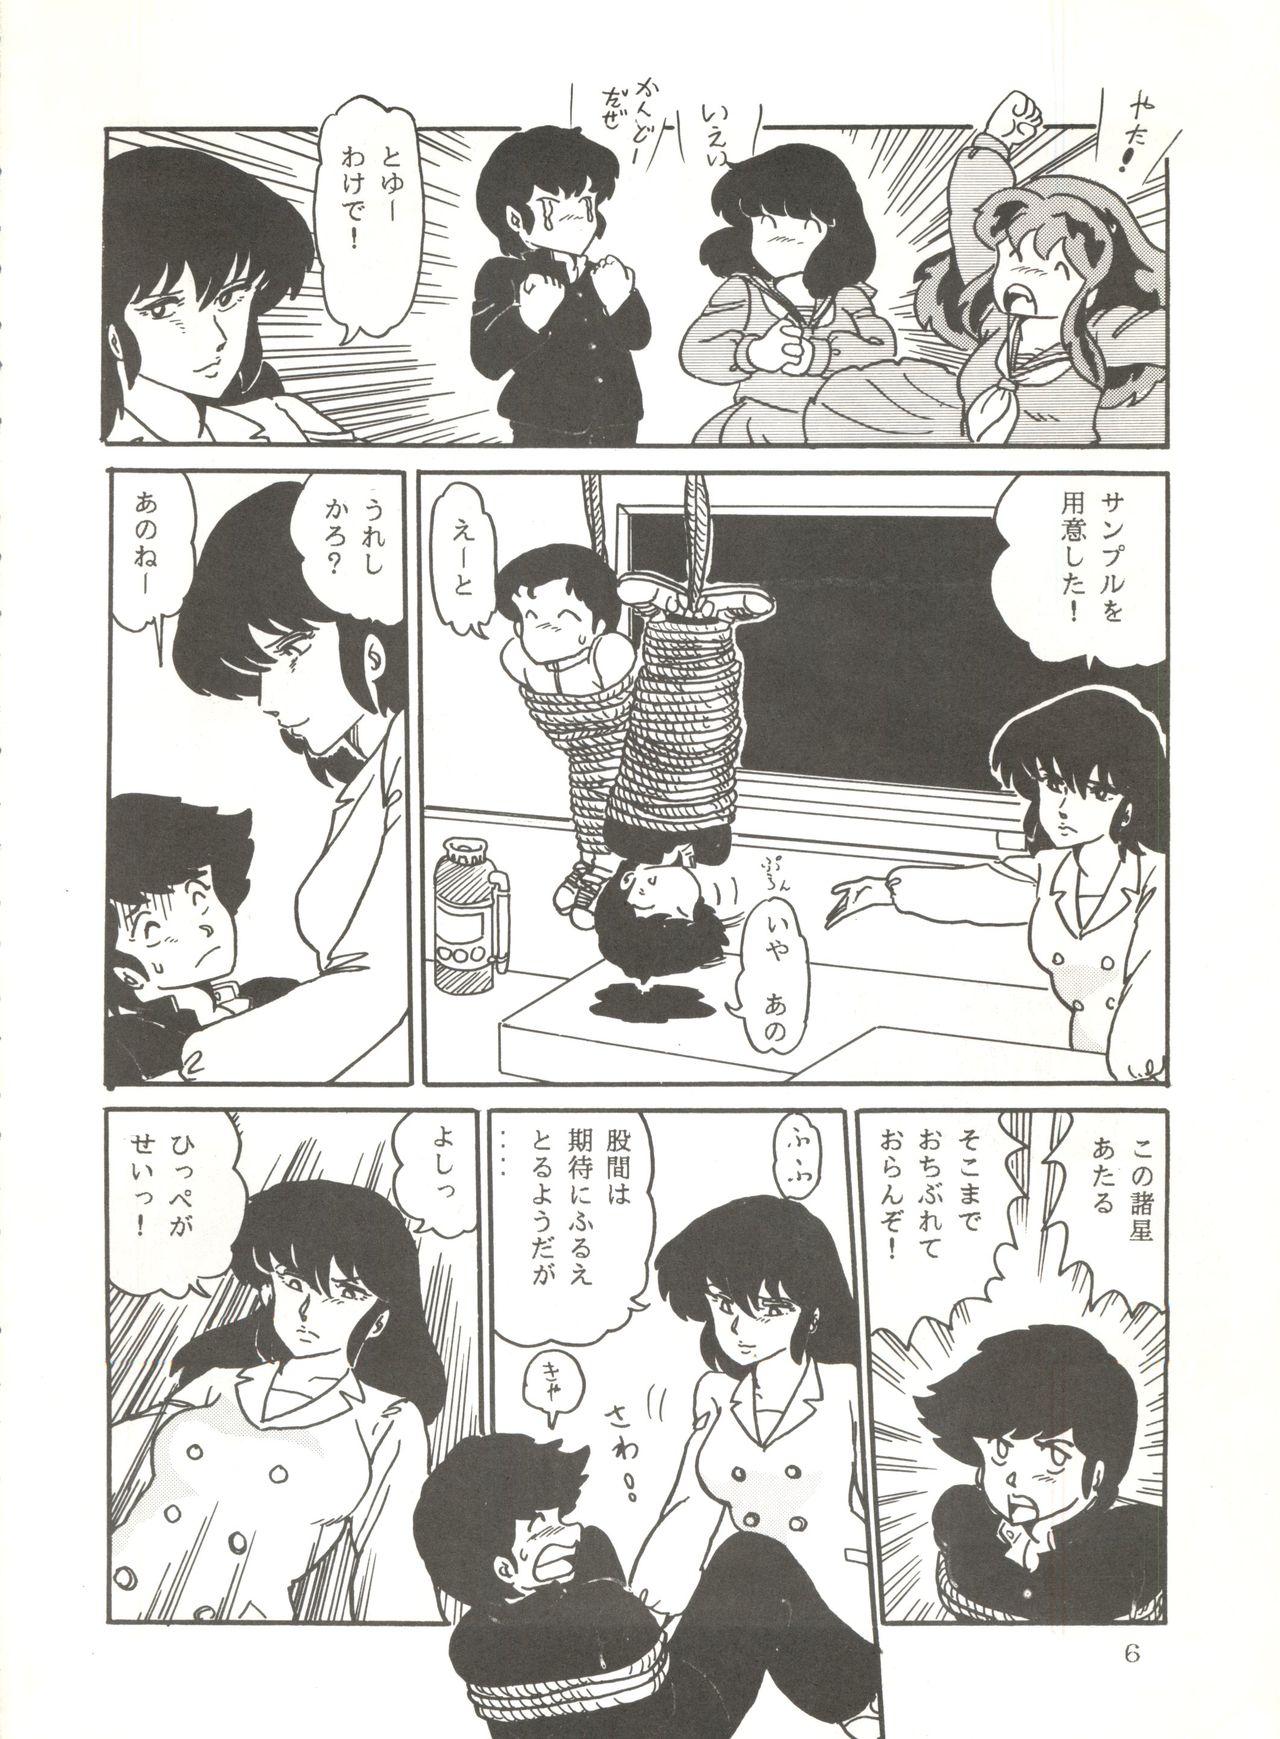 Arabic Shijou Saiaku no Lum 4 - Urusei yatsura White Chick - Page 5